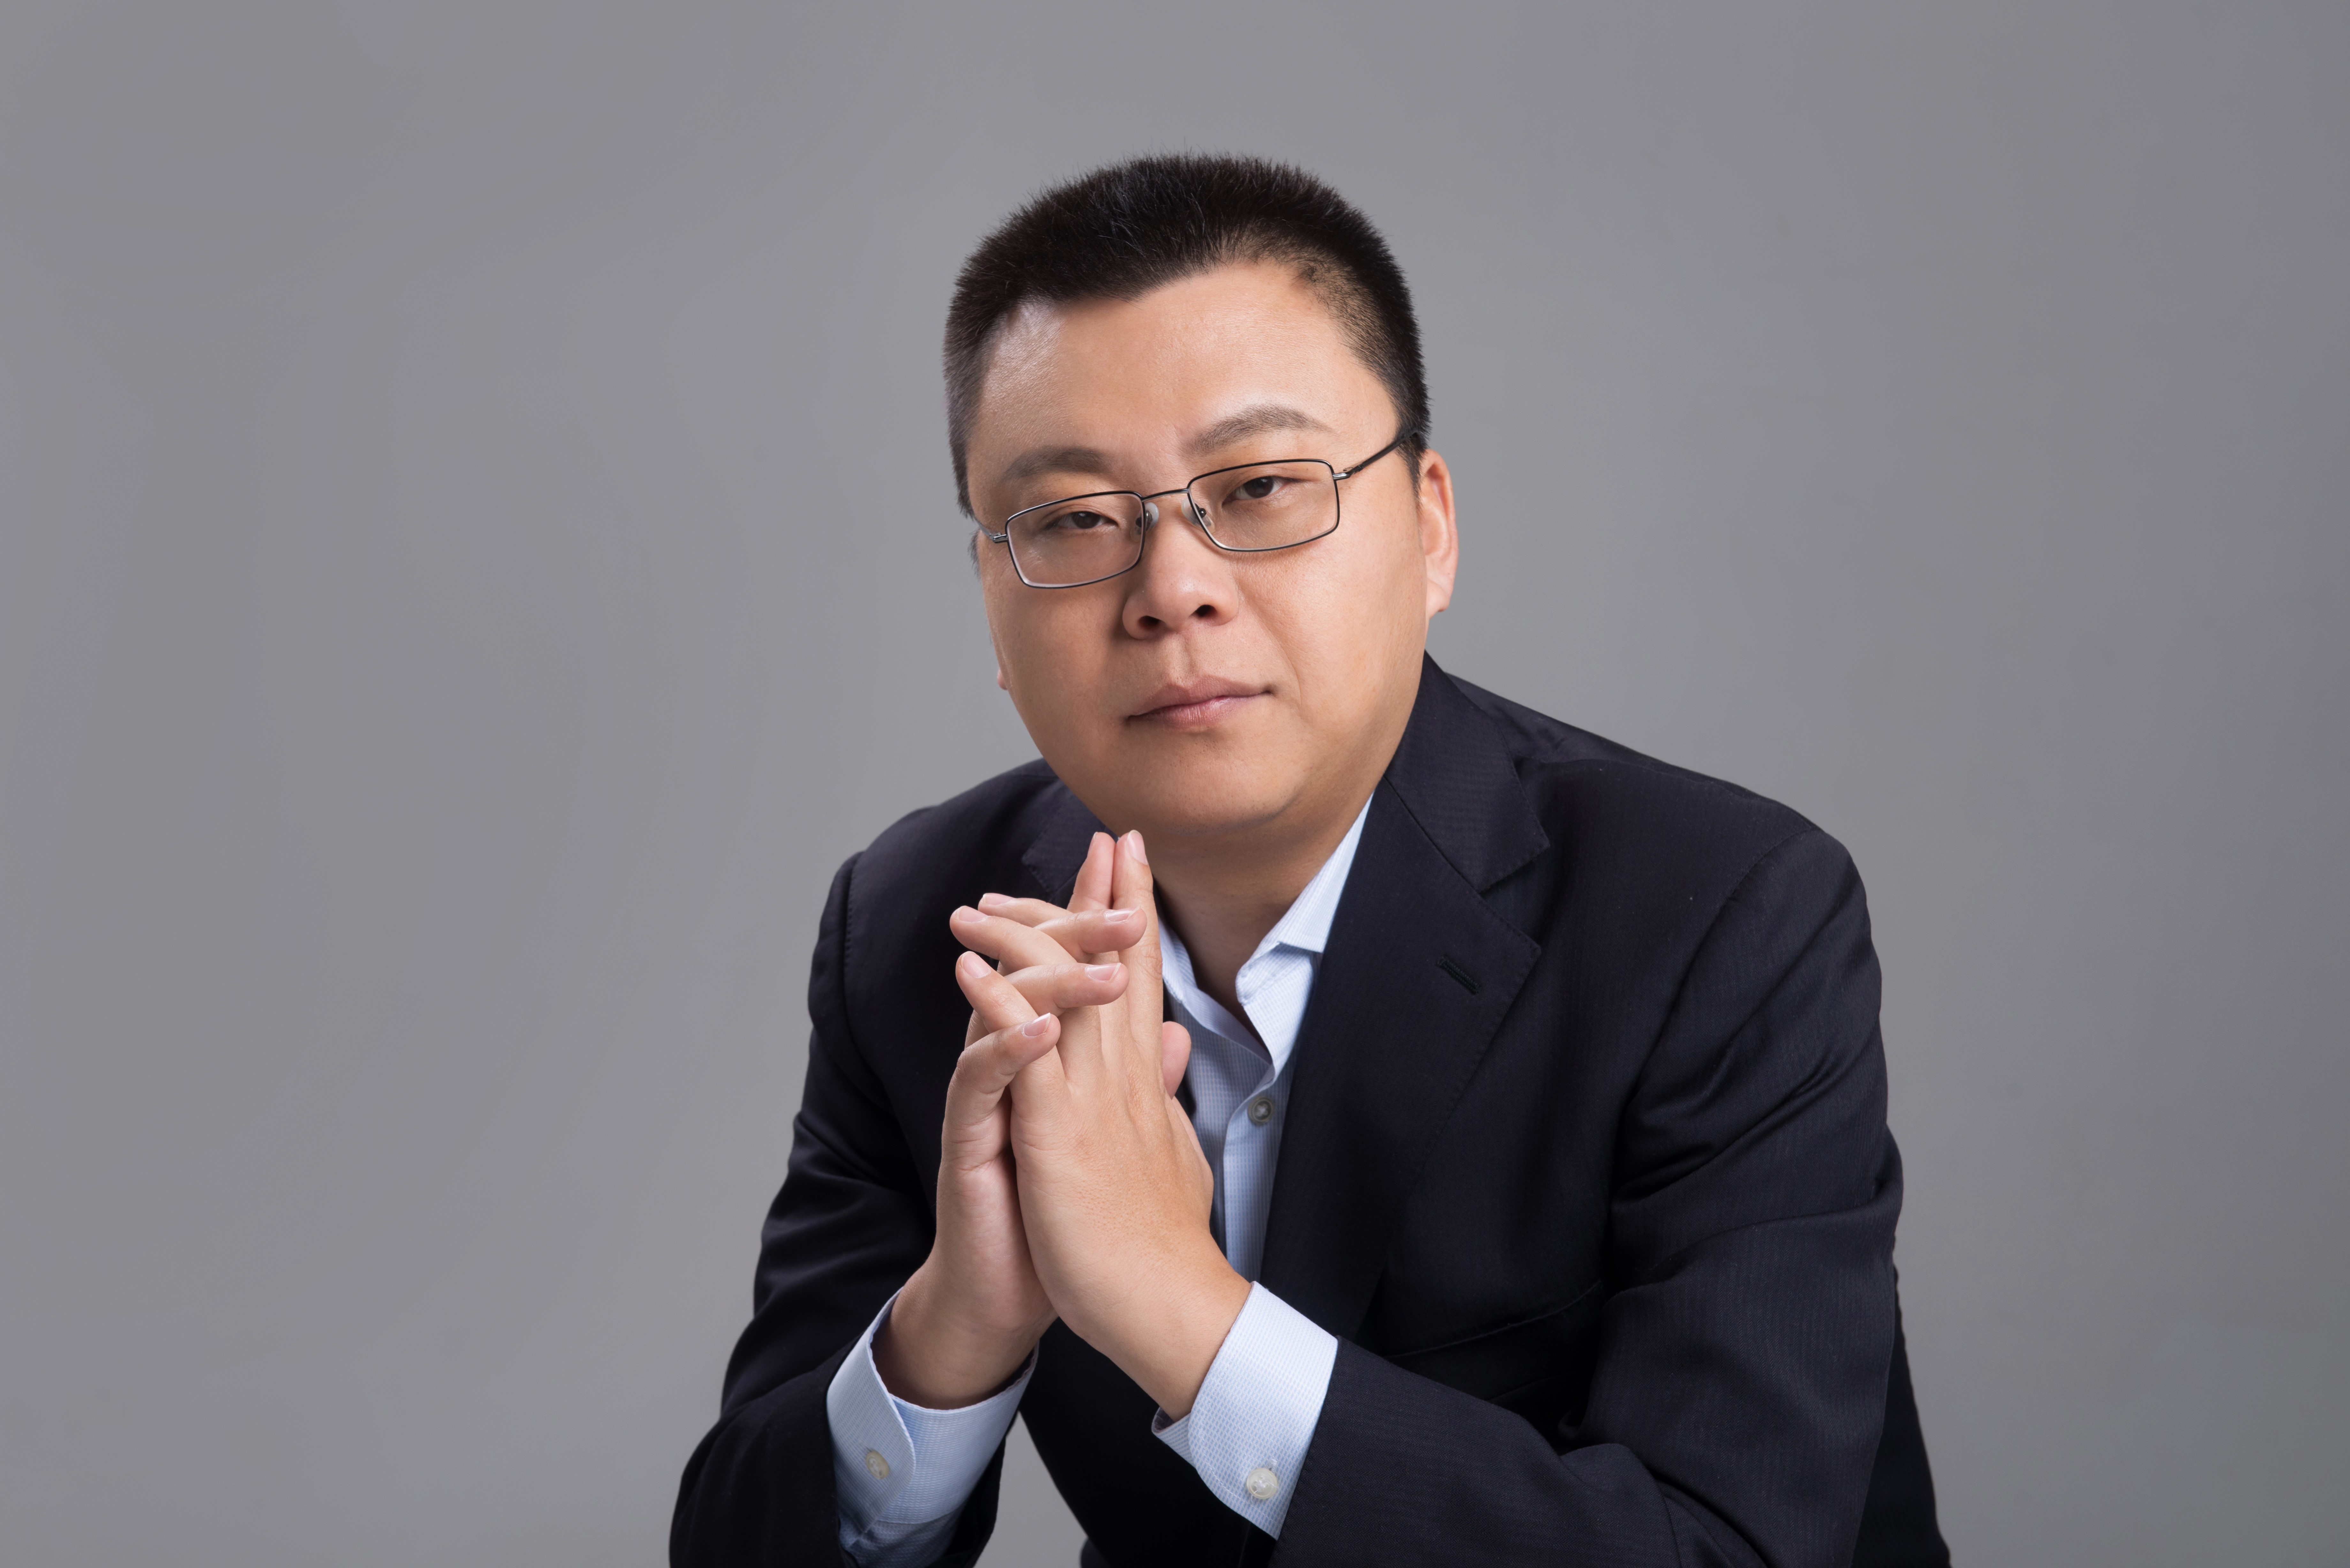 创始人刘兴亮确认出席2019凤凰网科技峰会